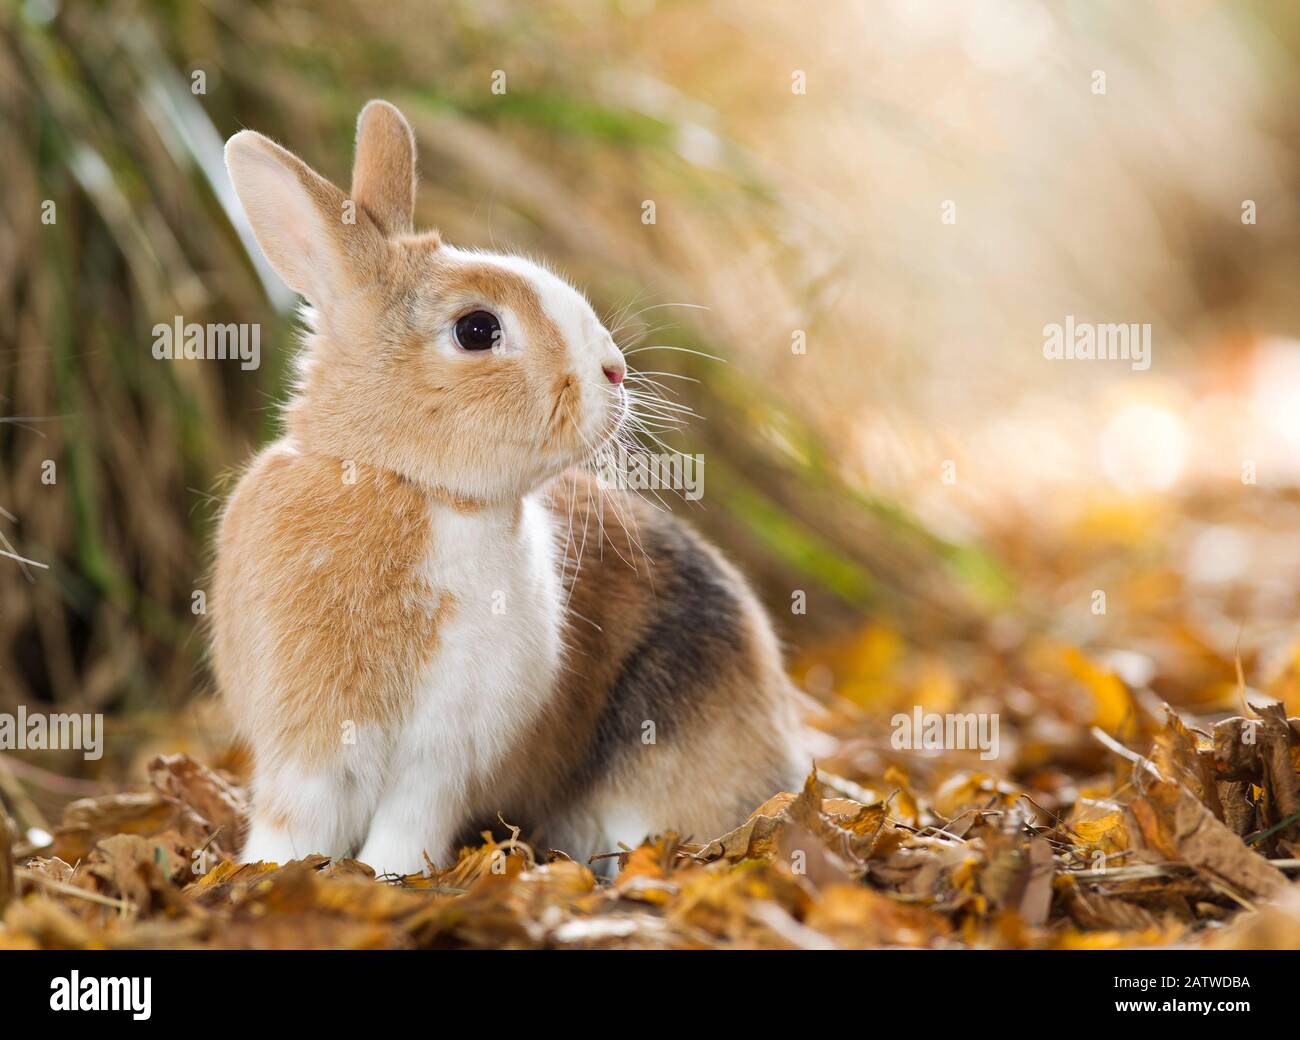 Netherland Dwarf lapin assis dans des feuilles d'automne sèches. Allemagne Banque D'Images